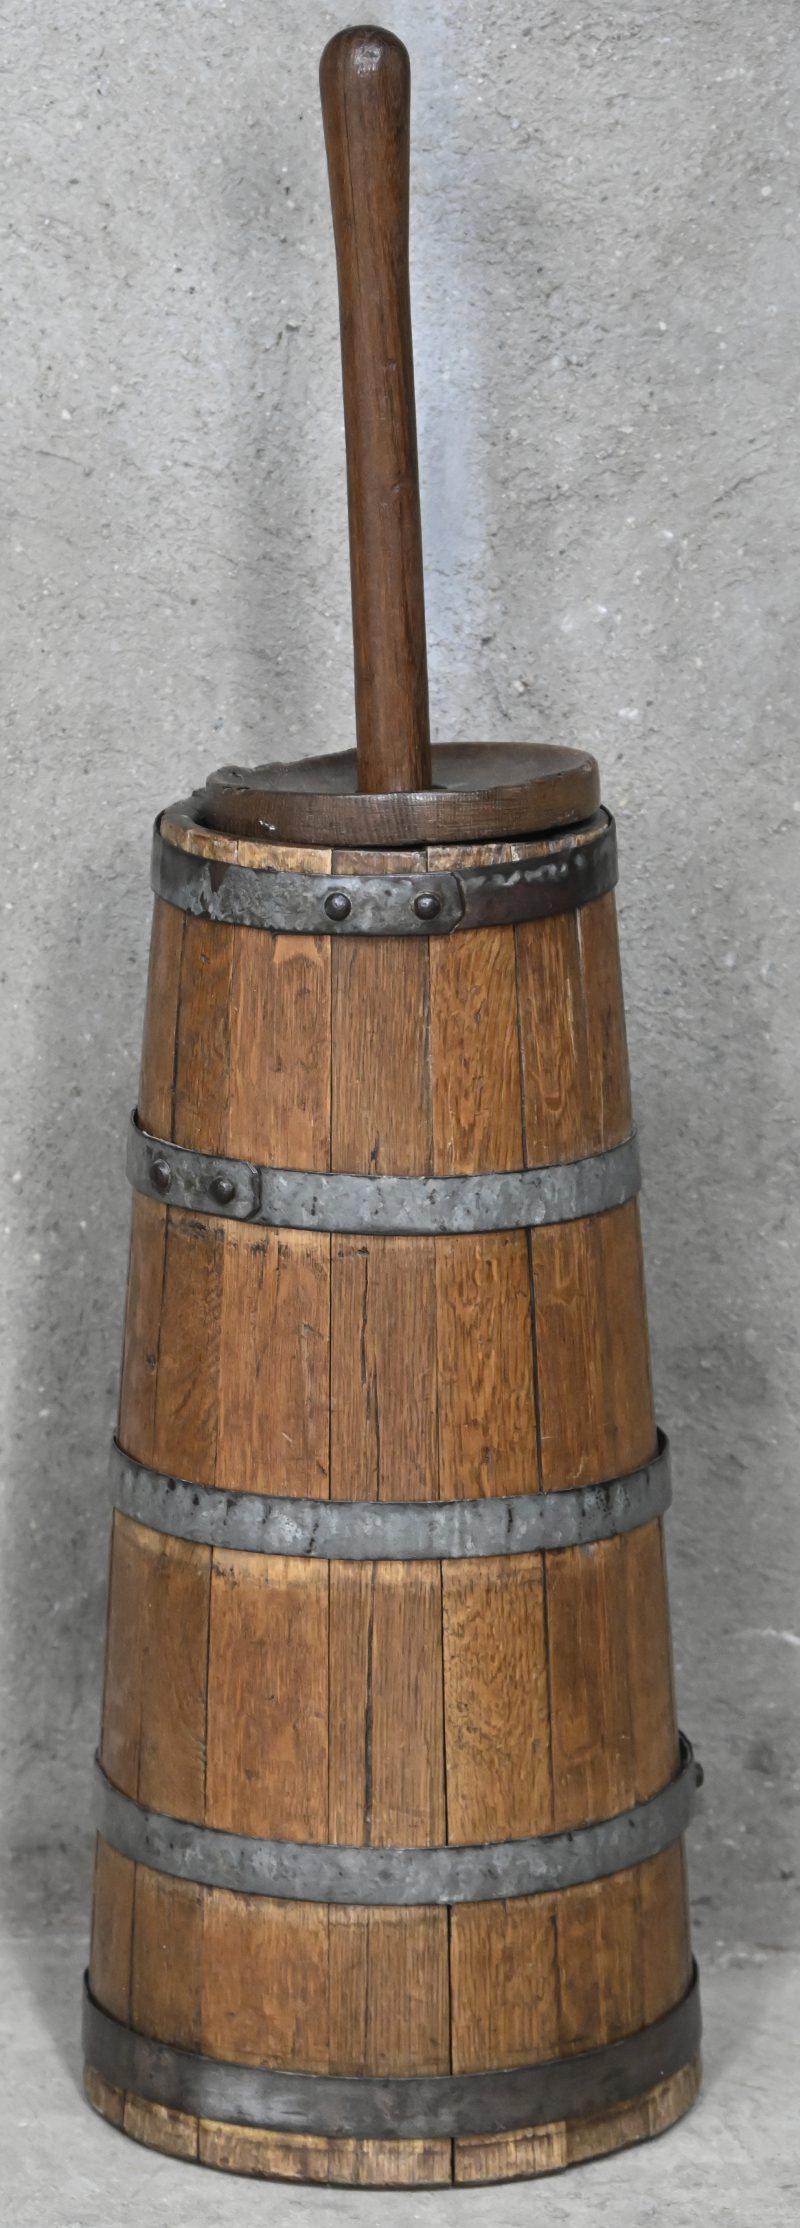 Een houten conische karnton met metalen ringen. Eind 19e eeuw.